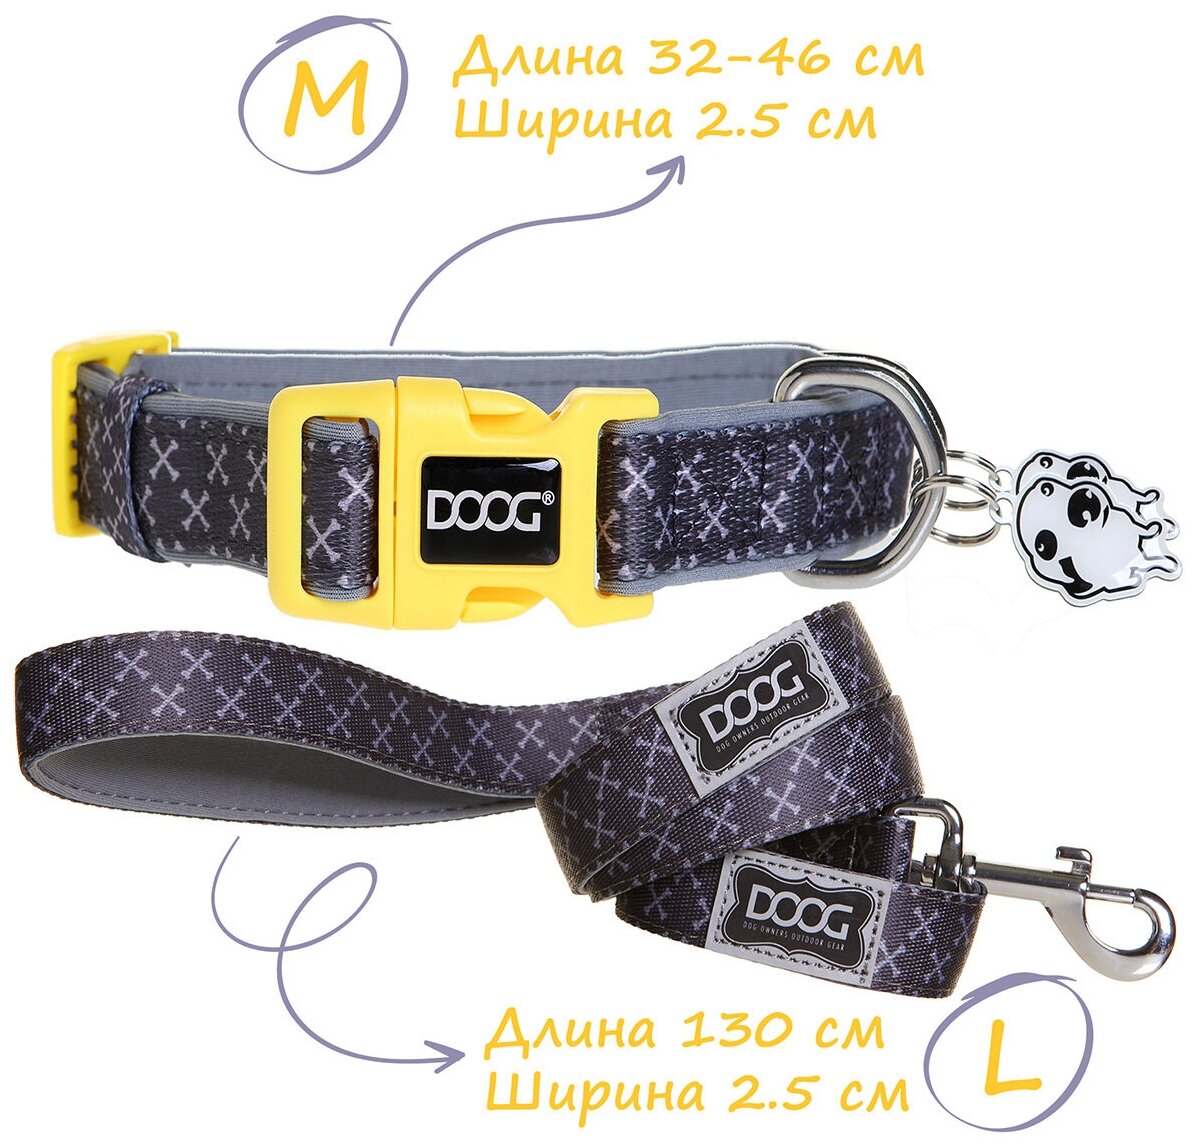 Ошейник и поводок для собак DOOG "Odie", серо - желтый, M, 32-46см/130х2.5см, комплект